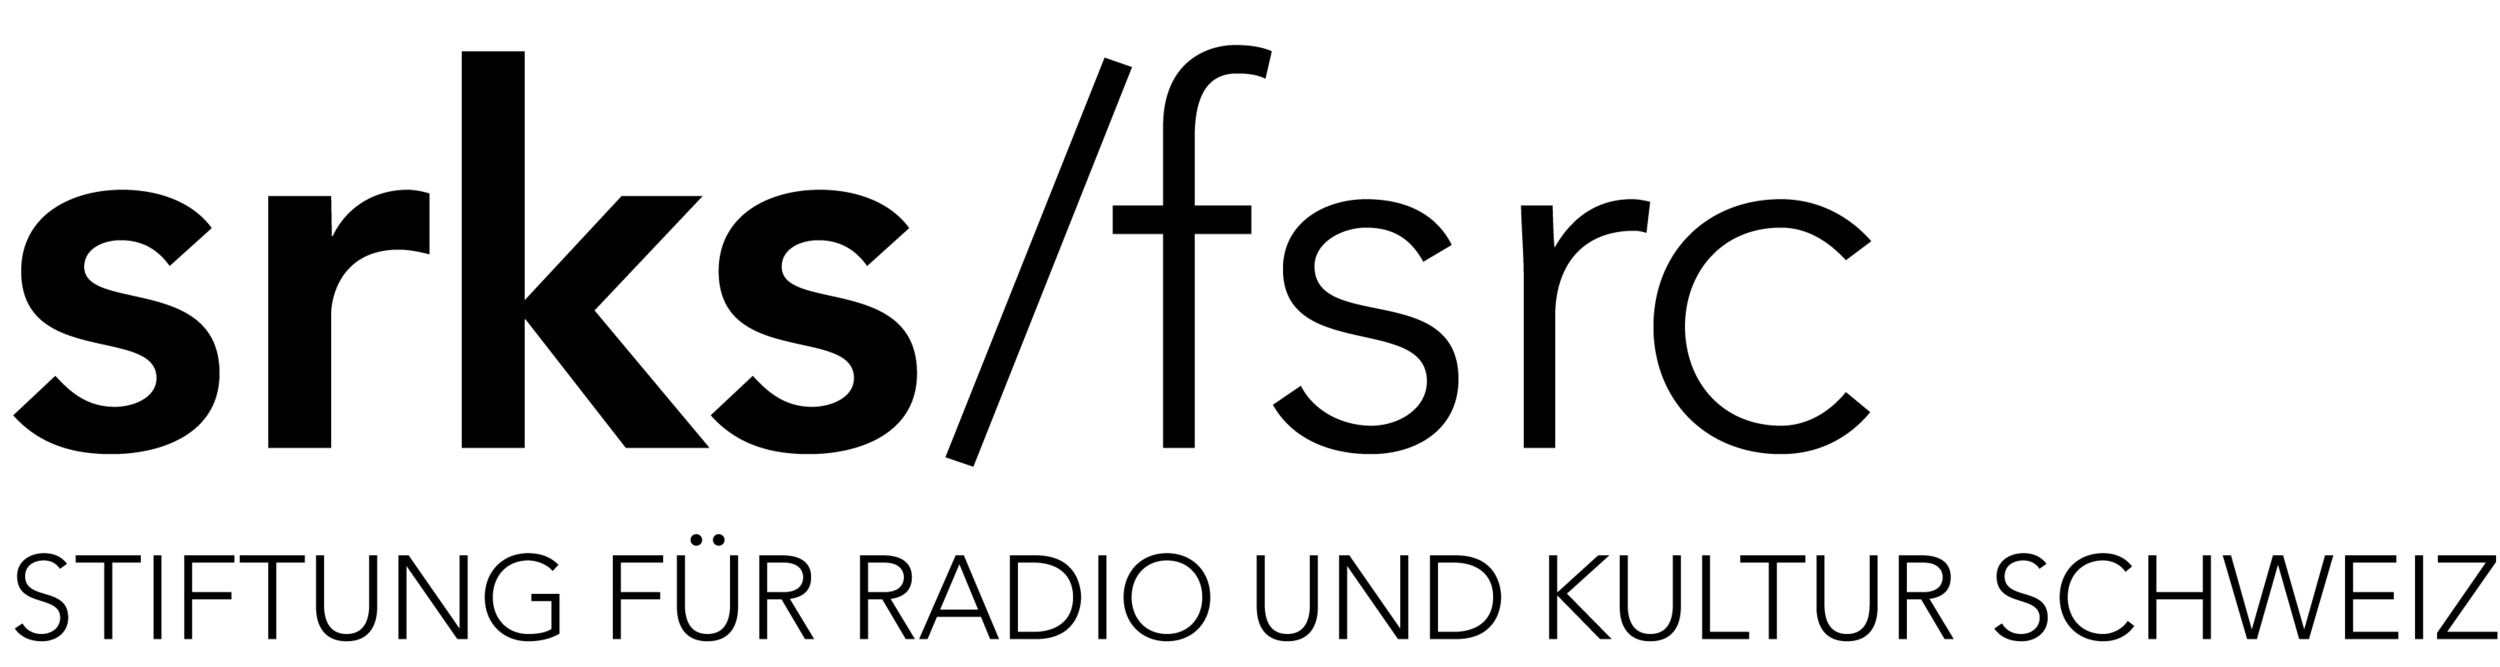   SRKS Stiftung für Radio und Kultur Schweiz  